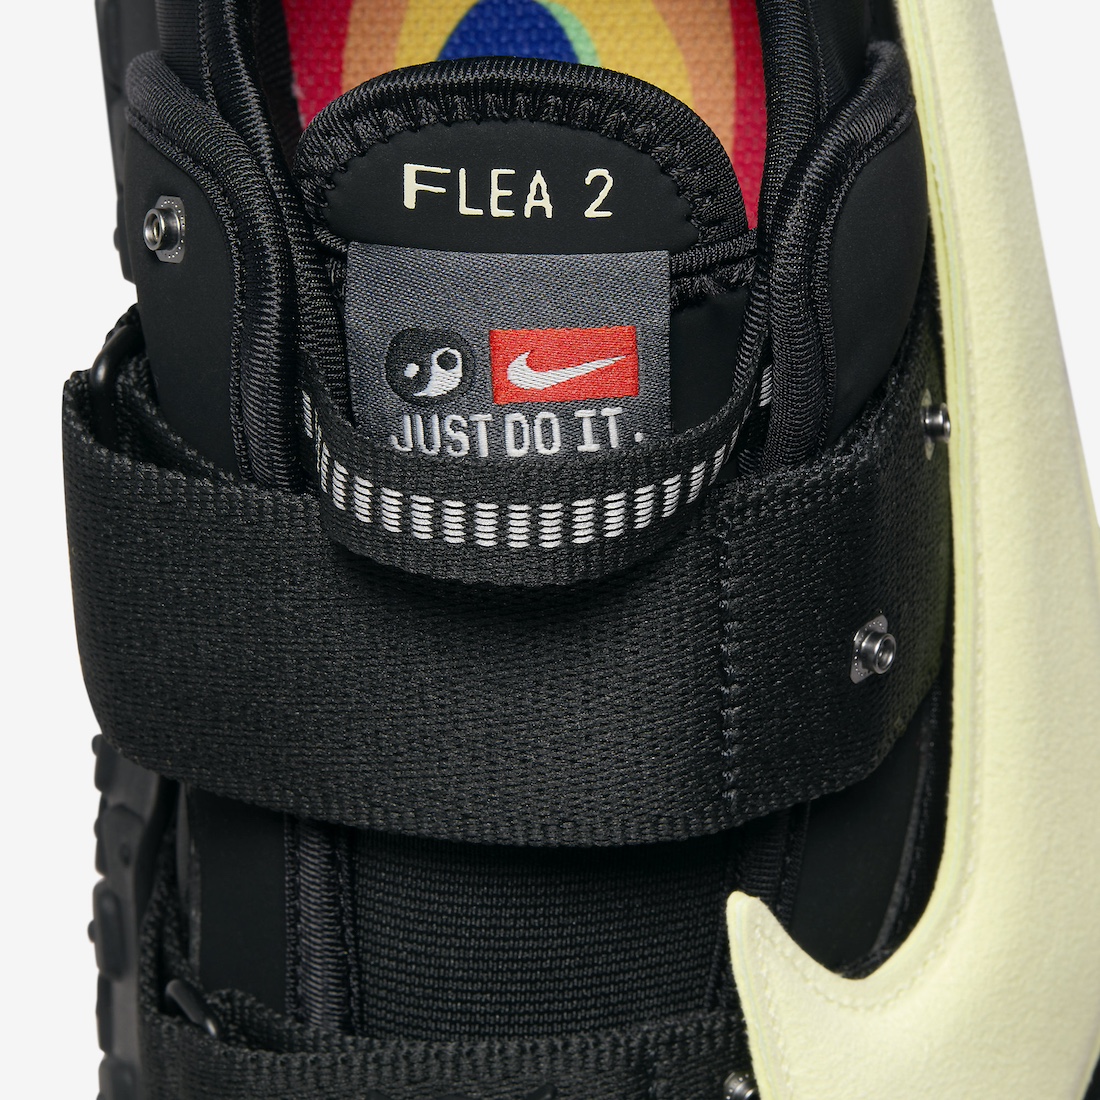 Nike CPFM Air Flea 2 Black DV7164 001 Release Date 9